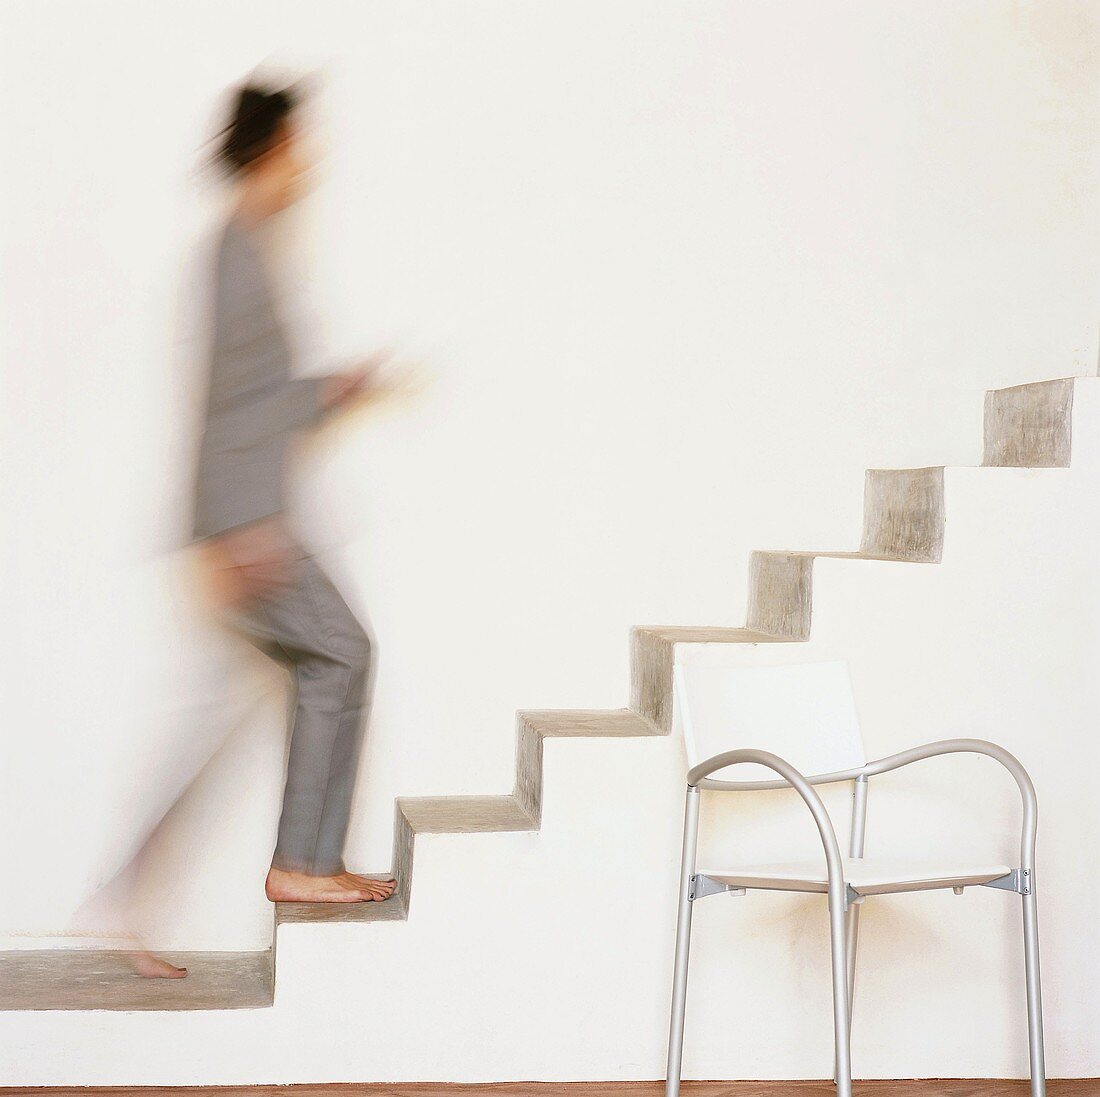 Frau geht auf einer freischwingenden Treppe nach oben